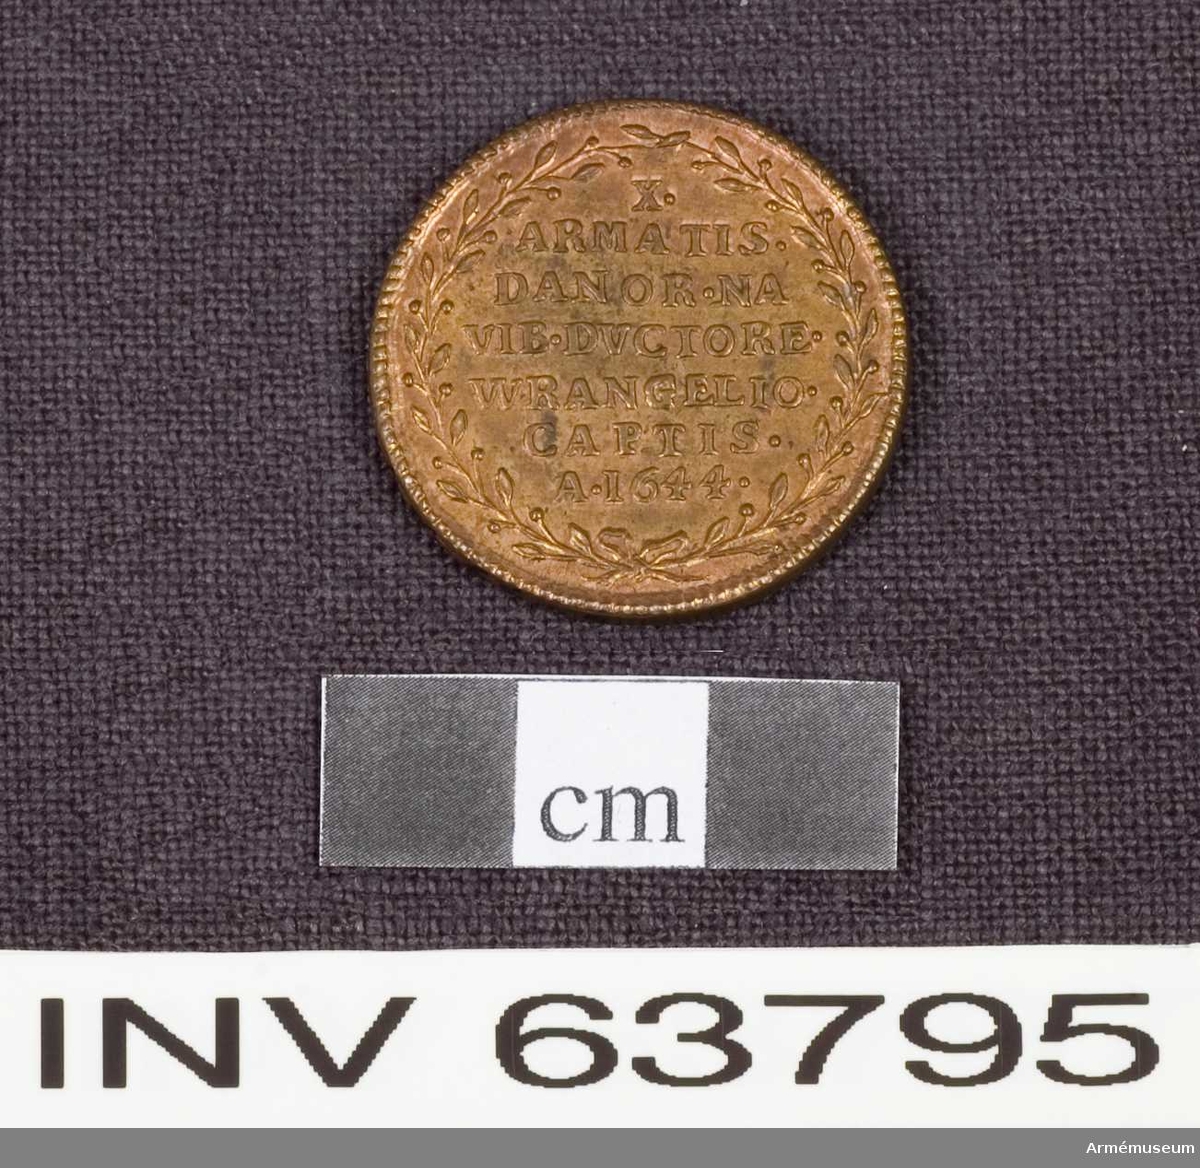 Grupp M.
Medalj av 6. storleken. Slaget vid Fernum den 13 oktober 1644 under Carl Gustaf Wrangels befäl. Medaljen är av brons och pärlkantad på båda sidor. 

ÅTSIDAN: "CHRISTINA. REGINA". Bröstbild åt höger i mantelveck.

FRÅNSIDAN: "X. ARMATIS. DANOR. NAVIB. DYCTORE. WRANGELIO. CAPTIS. A.1644" på sju rader inom en lagerkrans.